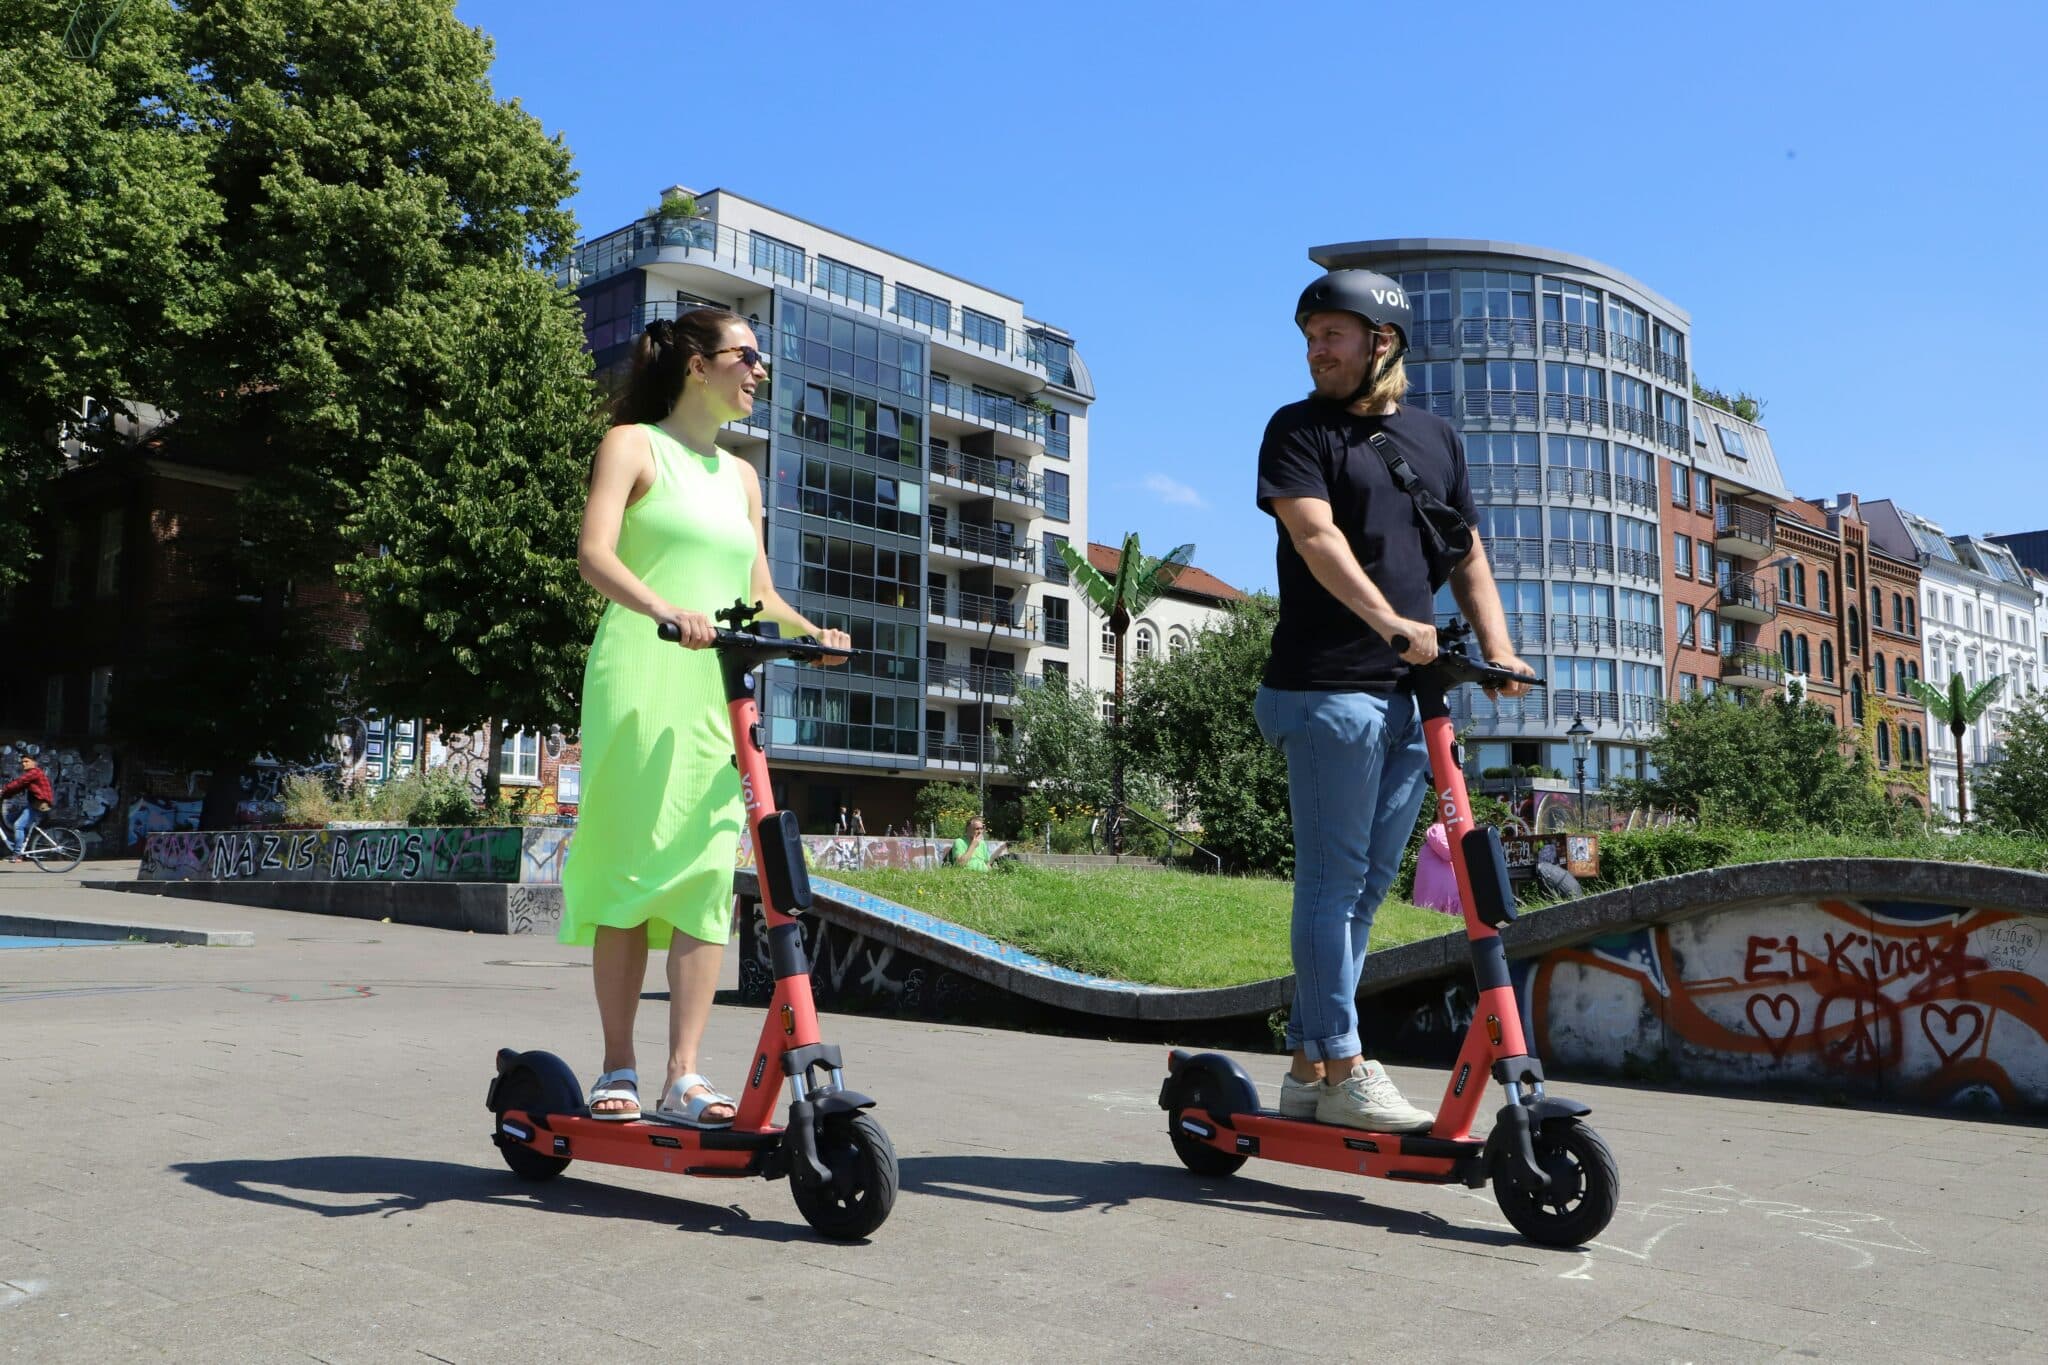 découvrez notre sélection de trottinettes électriques : pratiques, écologiques et faciles à utiliser. parcourez la ville en toute simplicité avec nos scooters électriques de qualité.